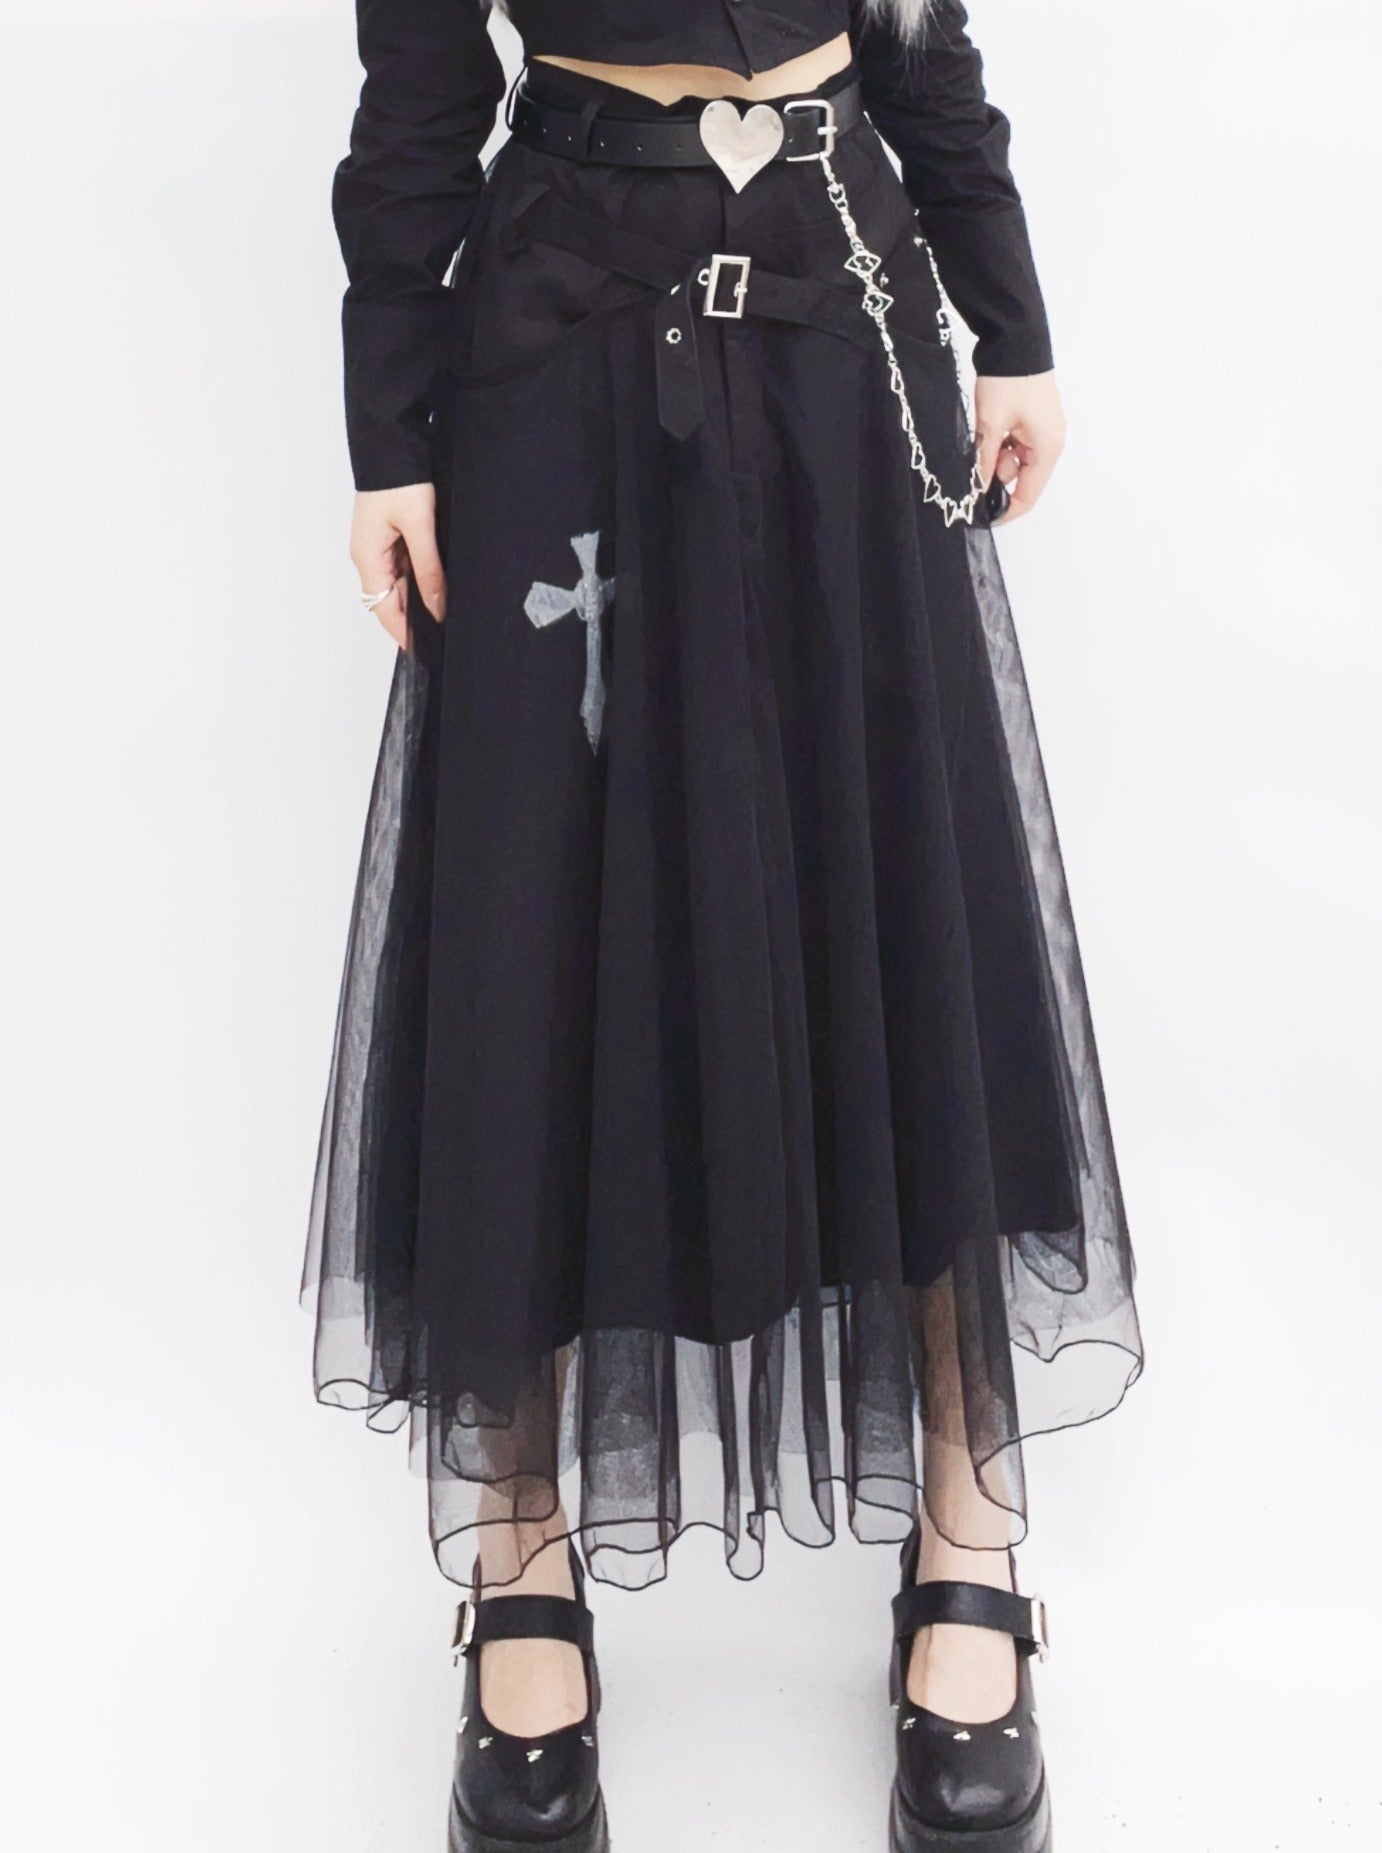 Dark mesh tutu skirt + chain belt